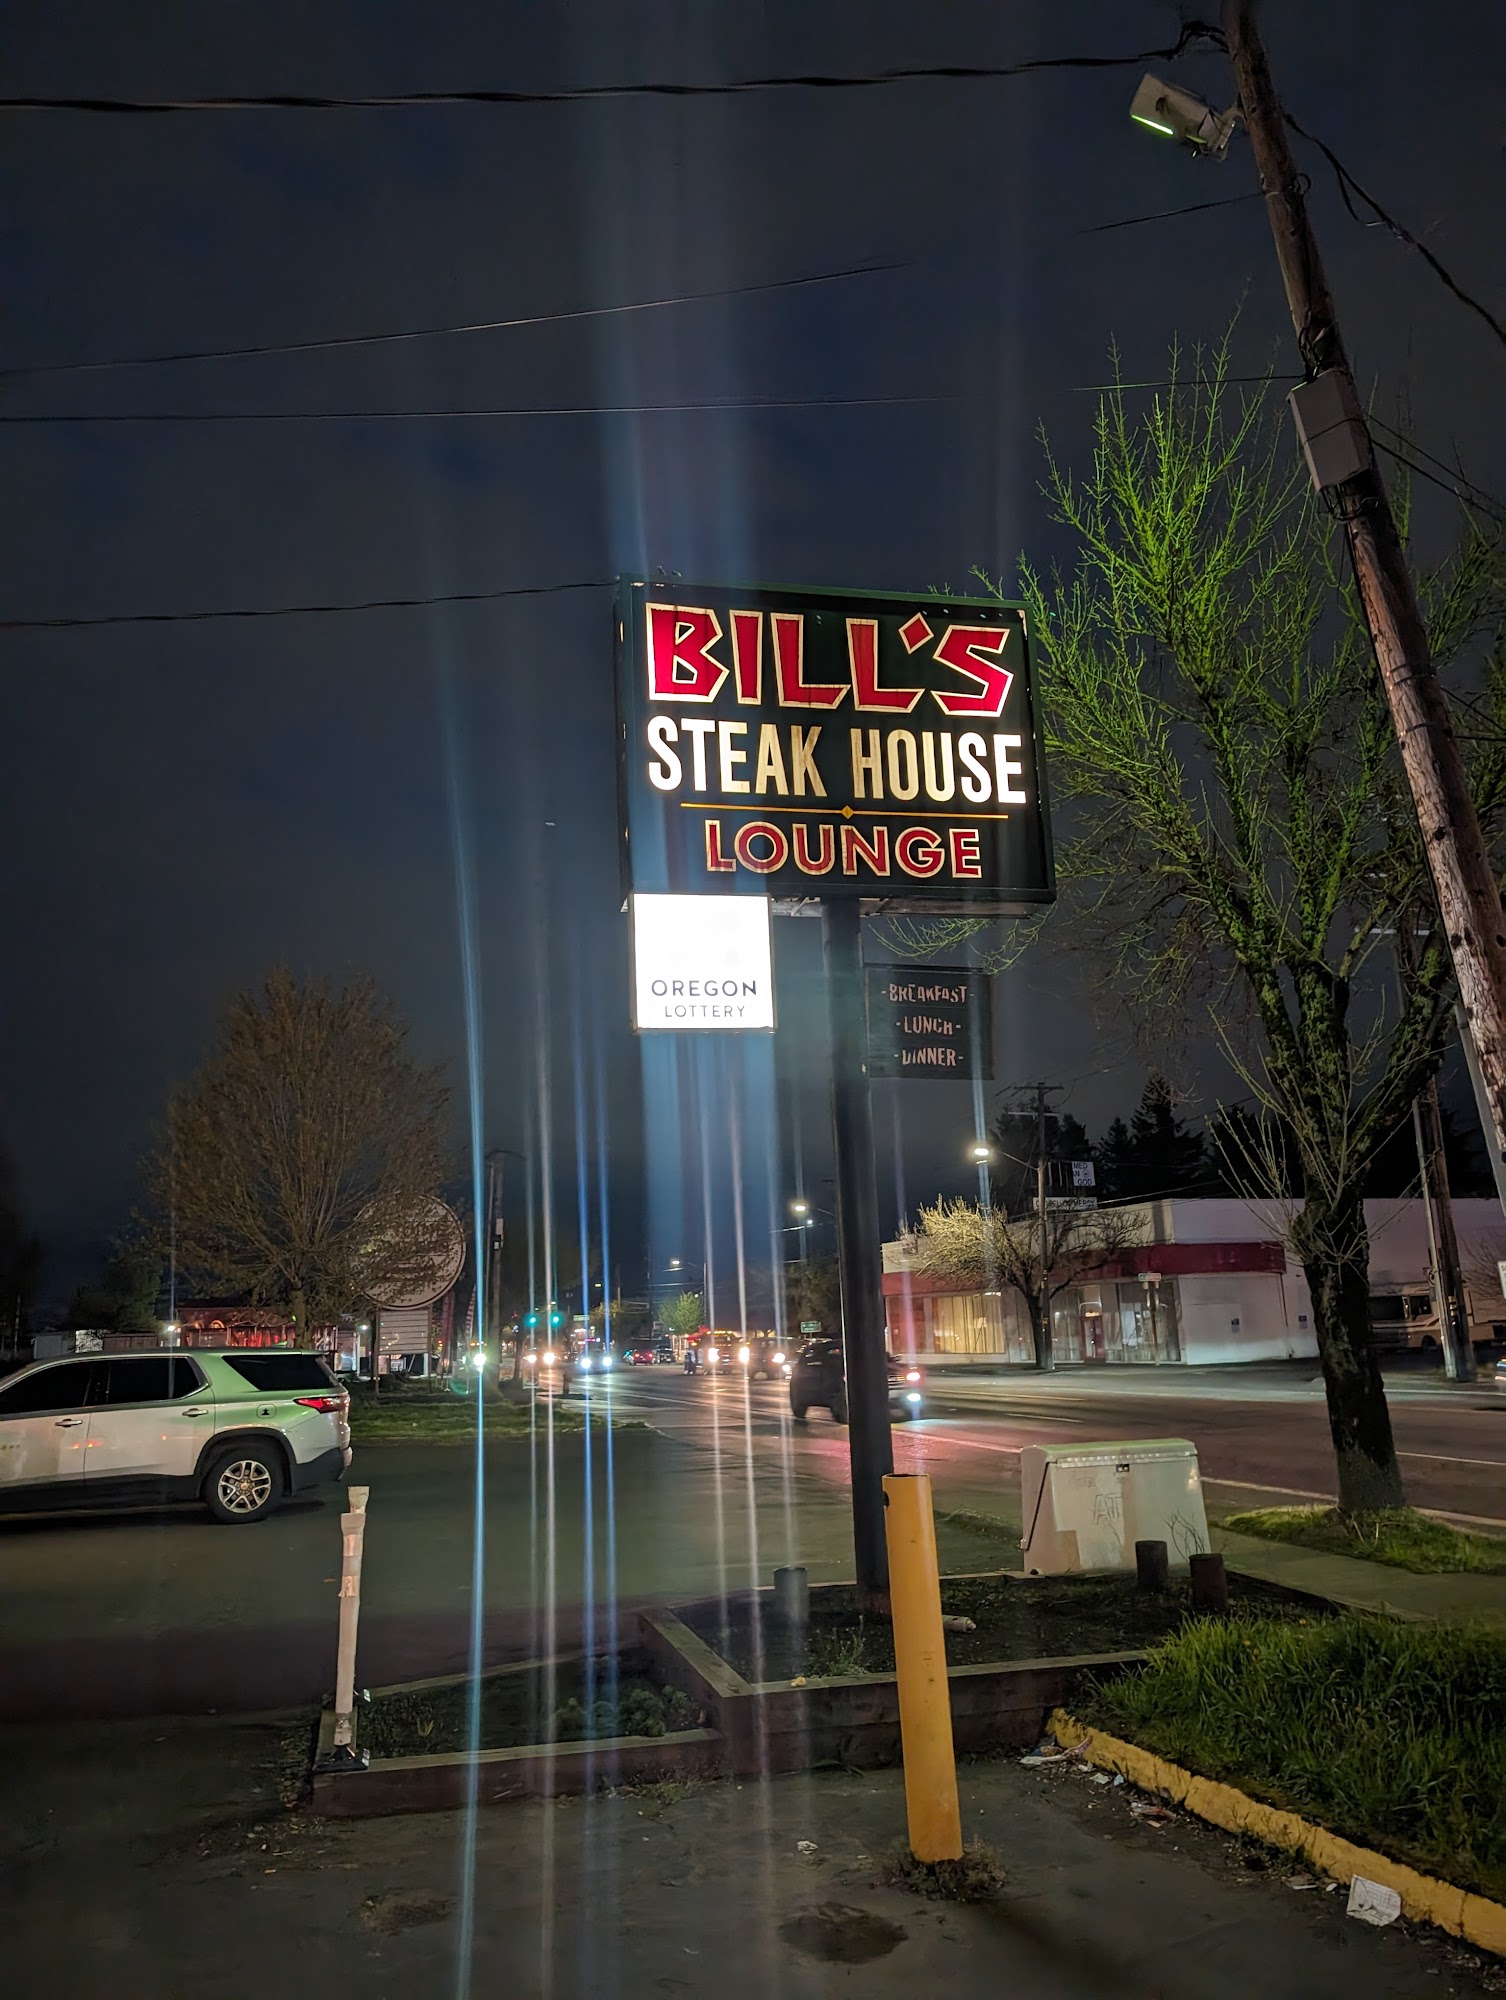 Bill's Steak House Lounge